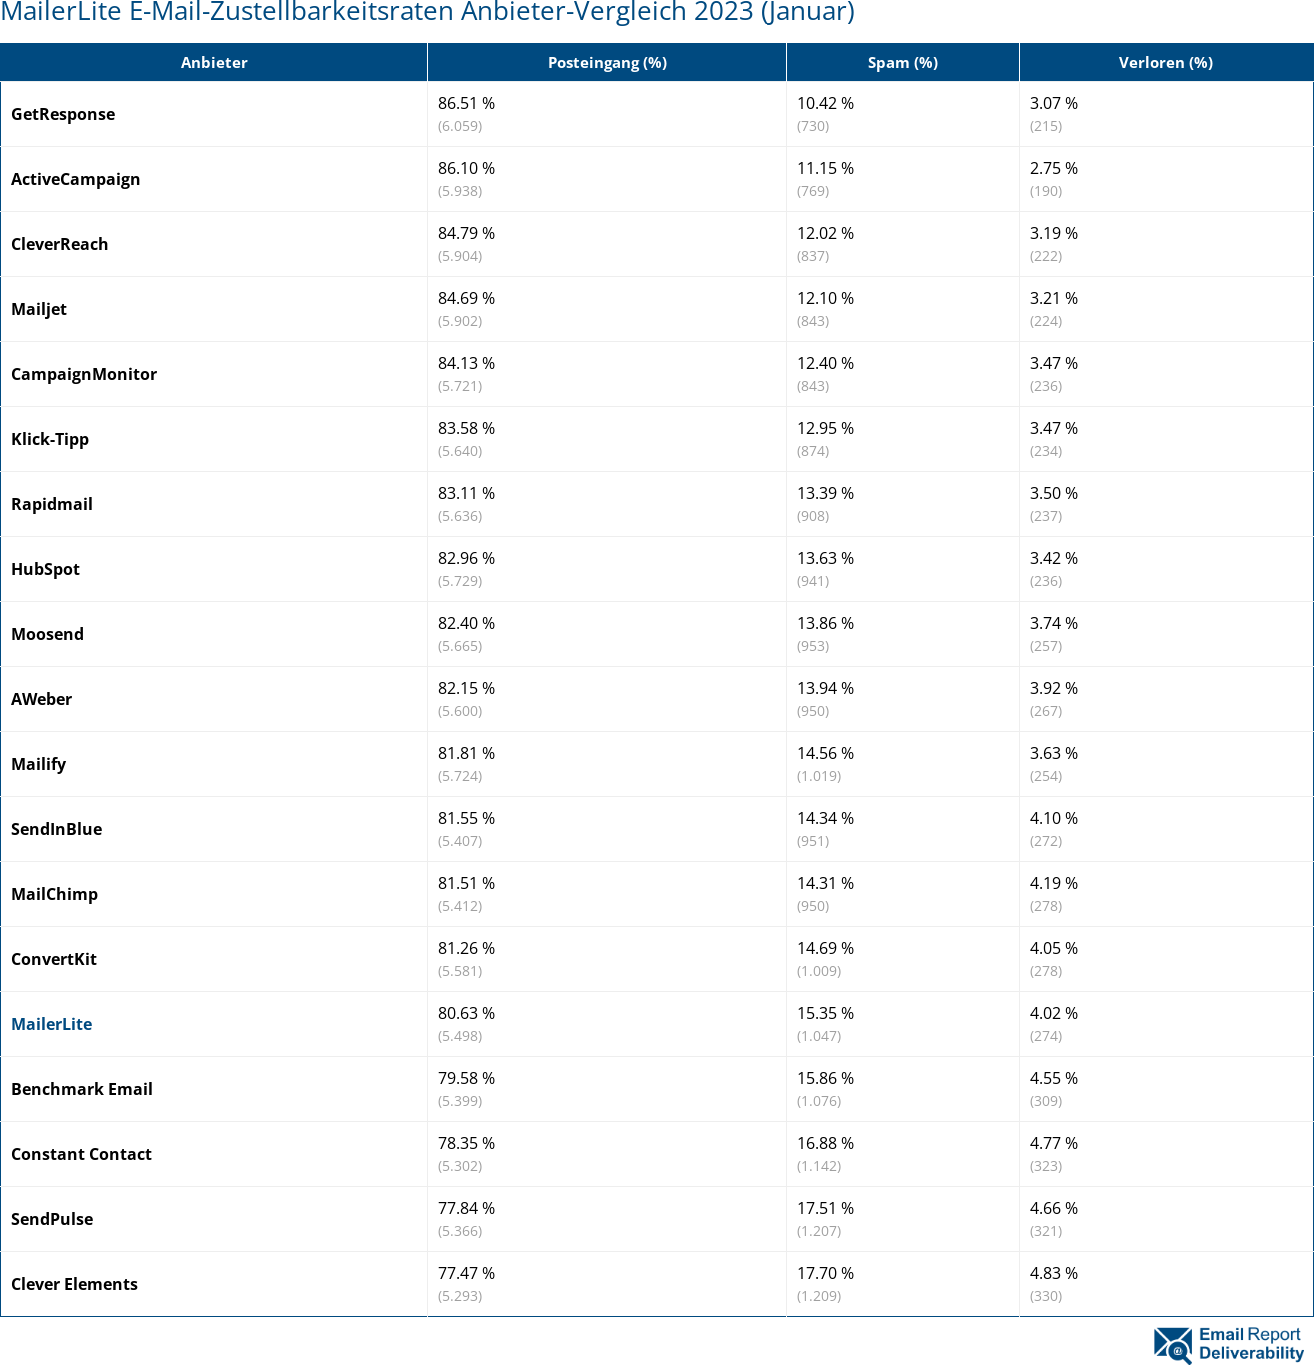 MailerLite E-Mail-Zustellbarkeitsraten Anbieter-Vergleich 2023 (Januar)